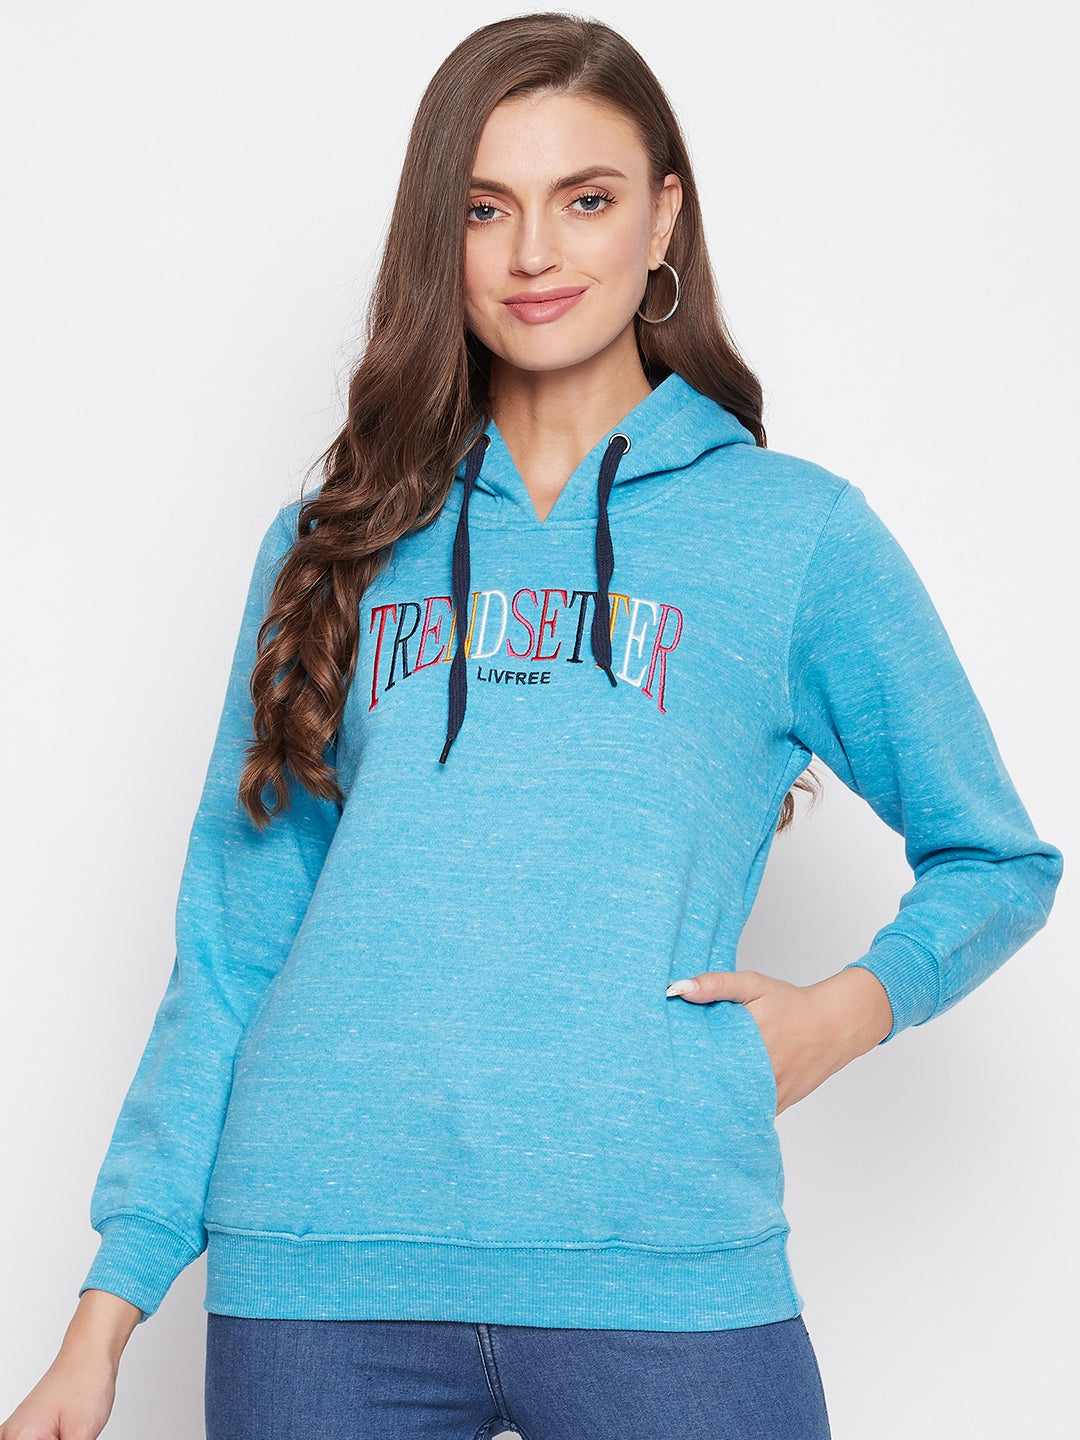 Livfree Women's Hoodie Full Sleeves Milange Sweatshirt - Vivid Blue